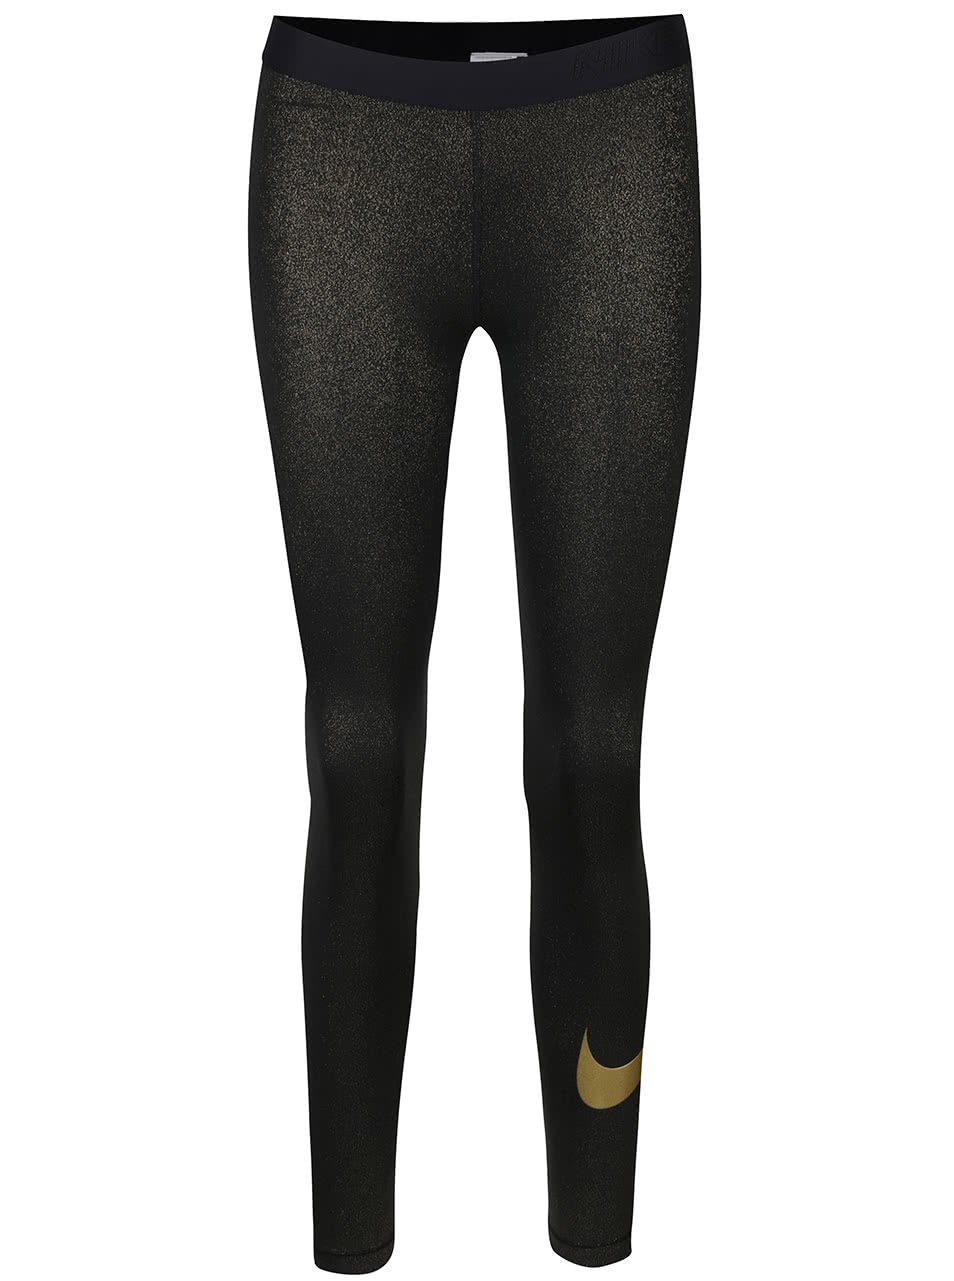 Dámské legíny ve zlato-černé barvě Nike Pro Cool Tight